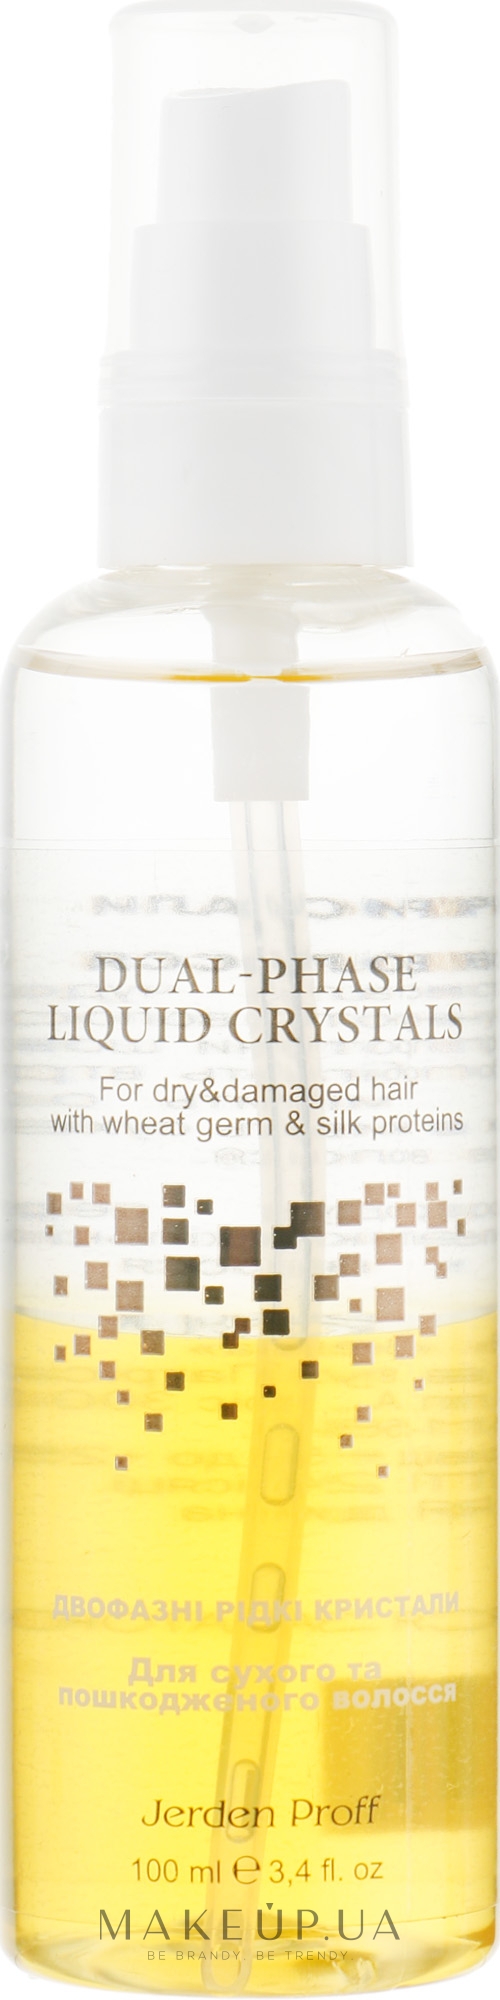 Двофазний рідкий кристал для сухого і пошкодженого волосся - Jerden Proff The Two-Phase Liquid Crystal — фото 100ml